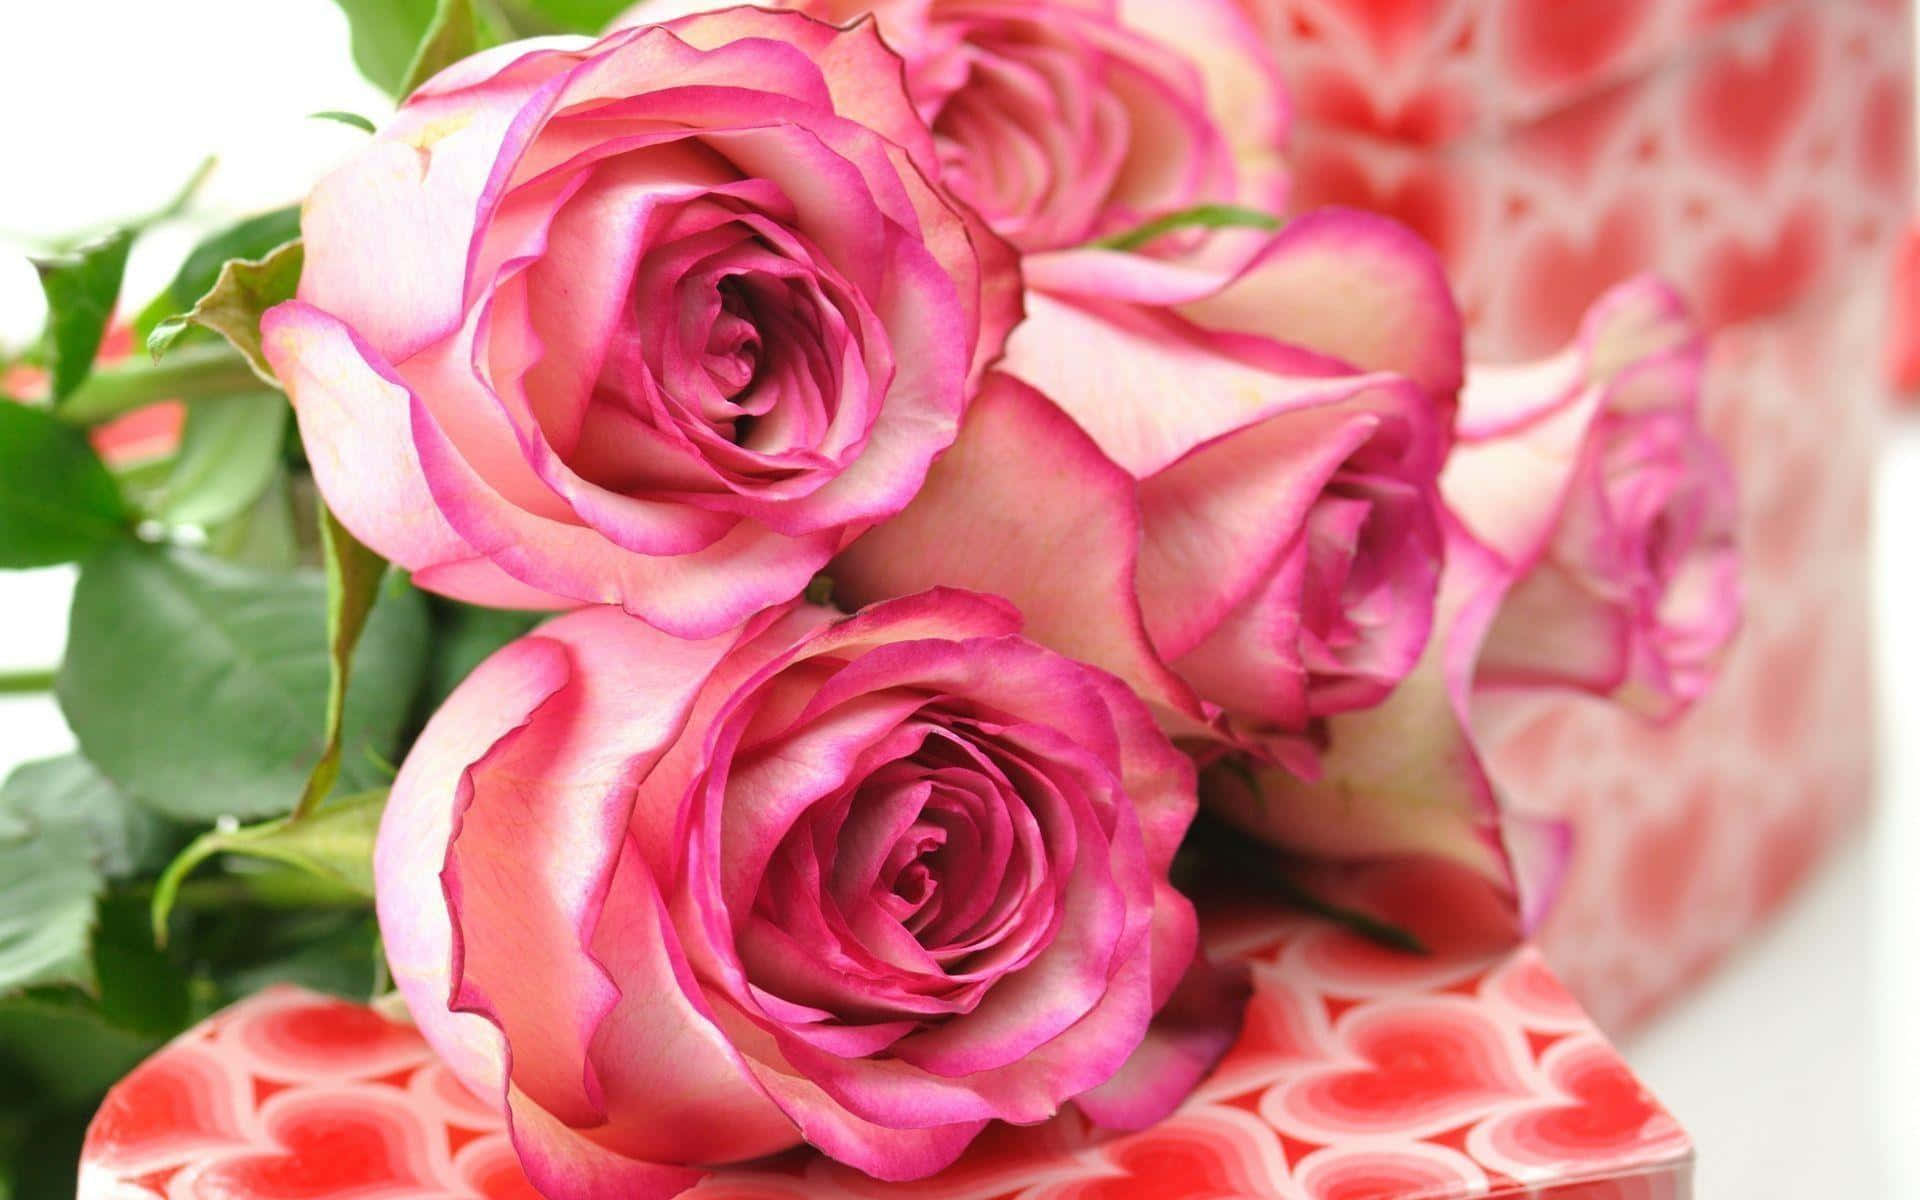 Unrubor De Belleza - Rosa Rosa En Plena Floración